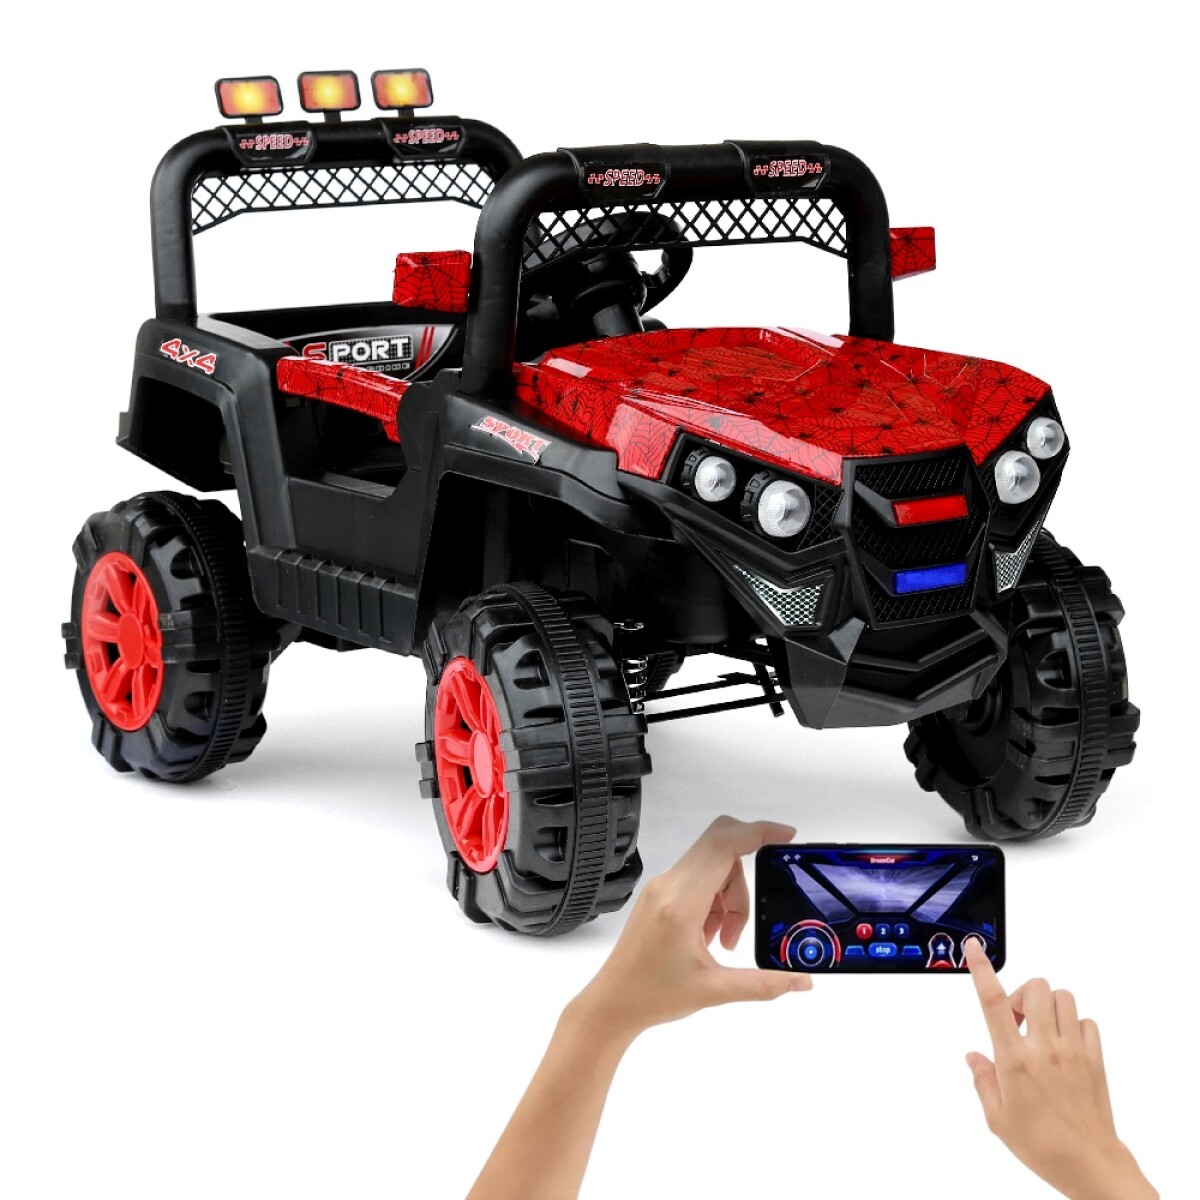 Jeep 4x4 Niños Auto Motor Batería Control USB Luces y Música - Rojo 